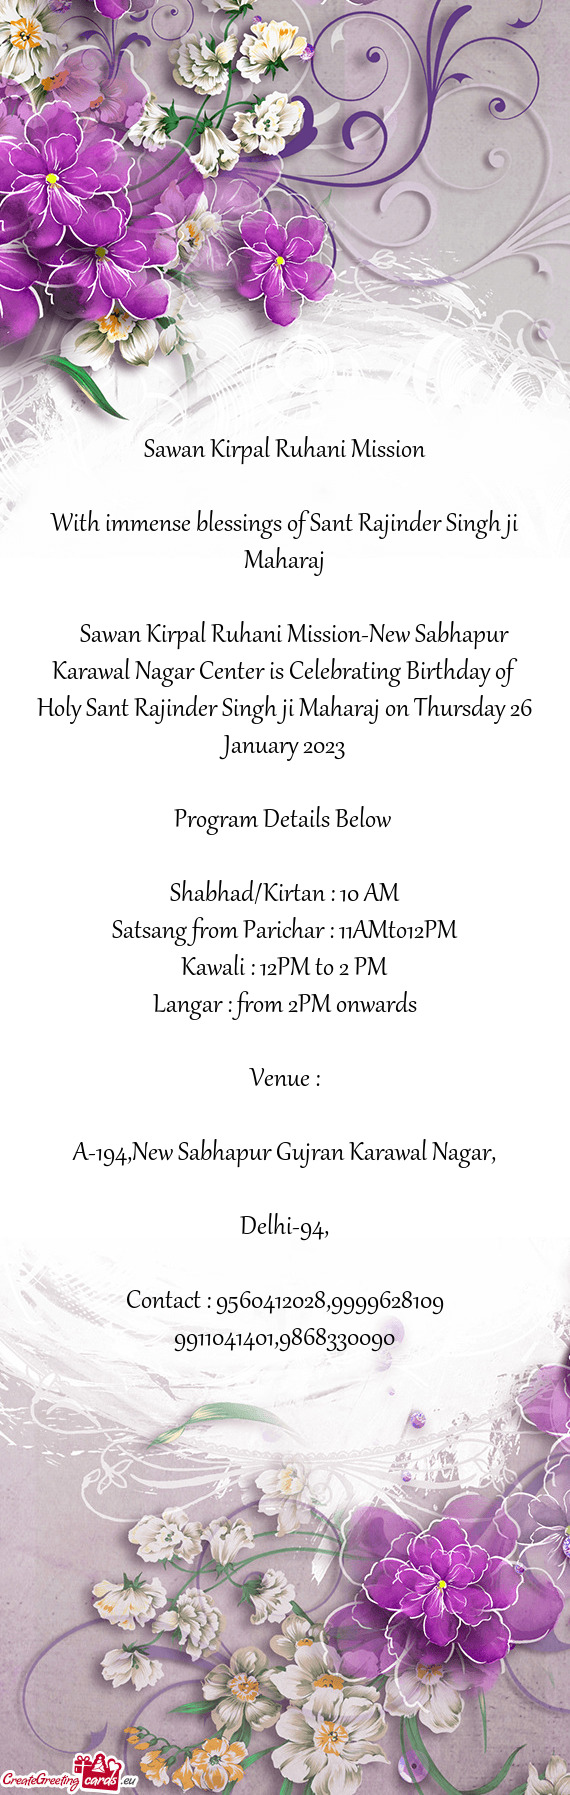 Sawan Kirpal Ruhani Mission-New Sabhapur Karawal Nagar Center is Celebrating Birthday of Holy Sa